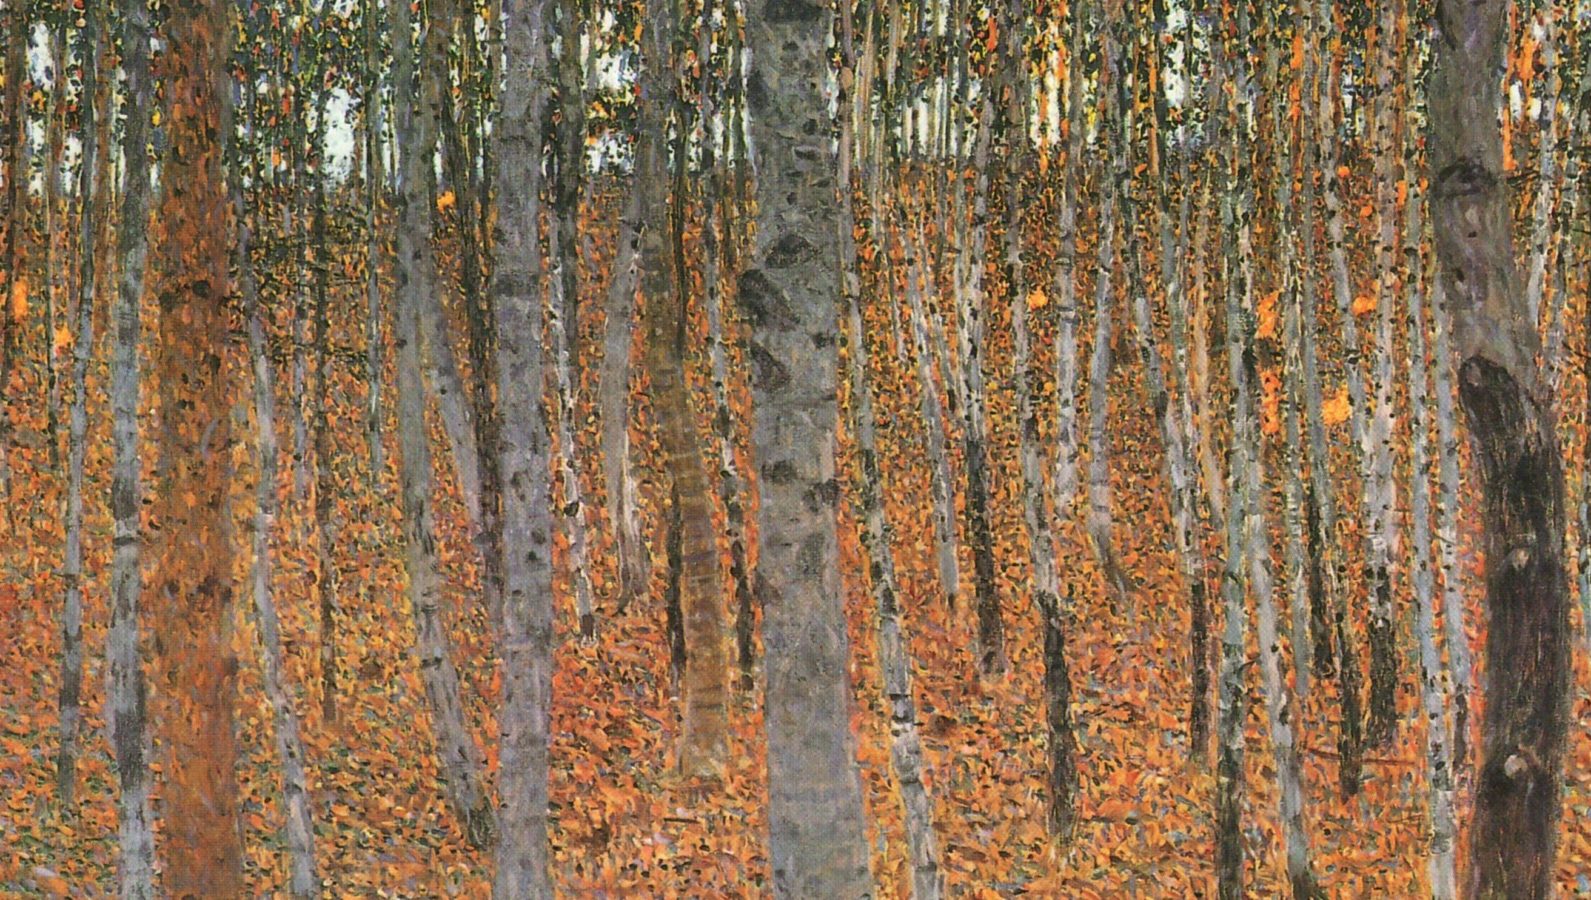 Konsekvenser myg Breddegrad Gustav Klimt and His Love for Trees in Paintings - DailyArt Magazine